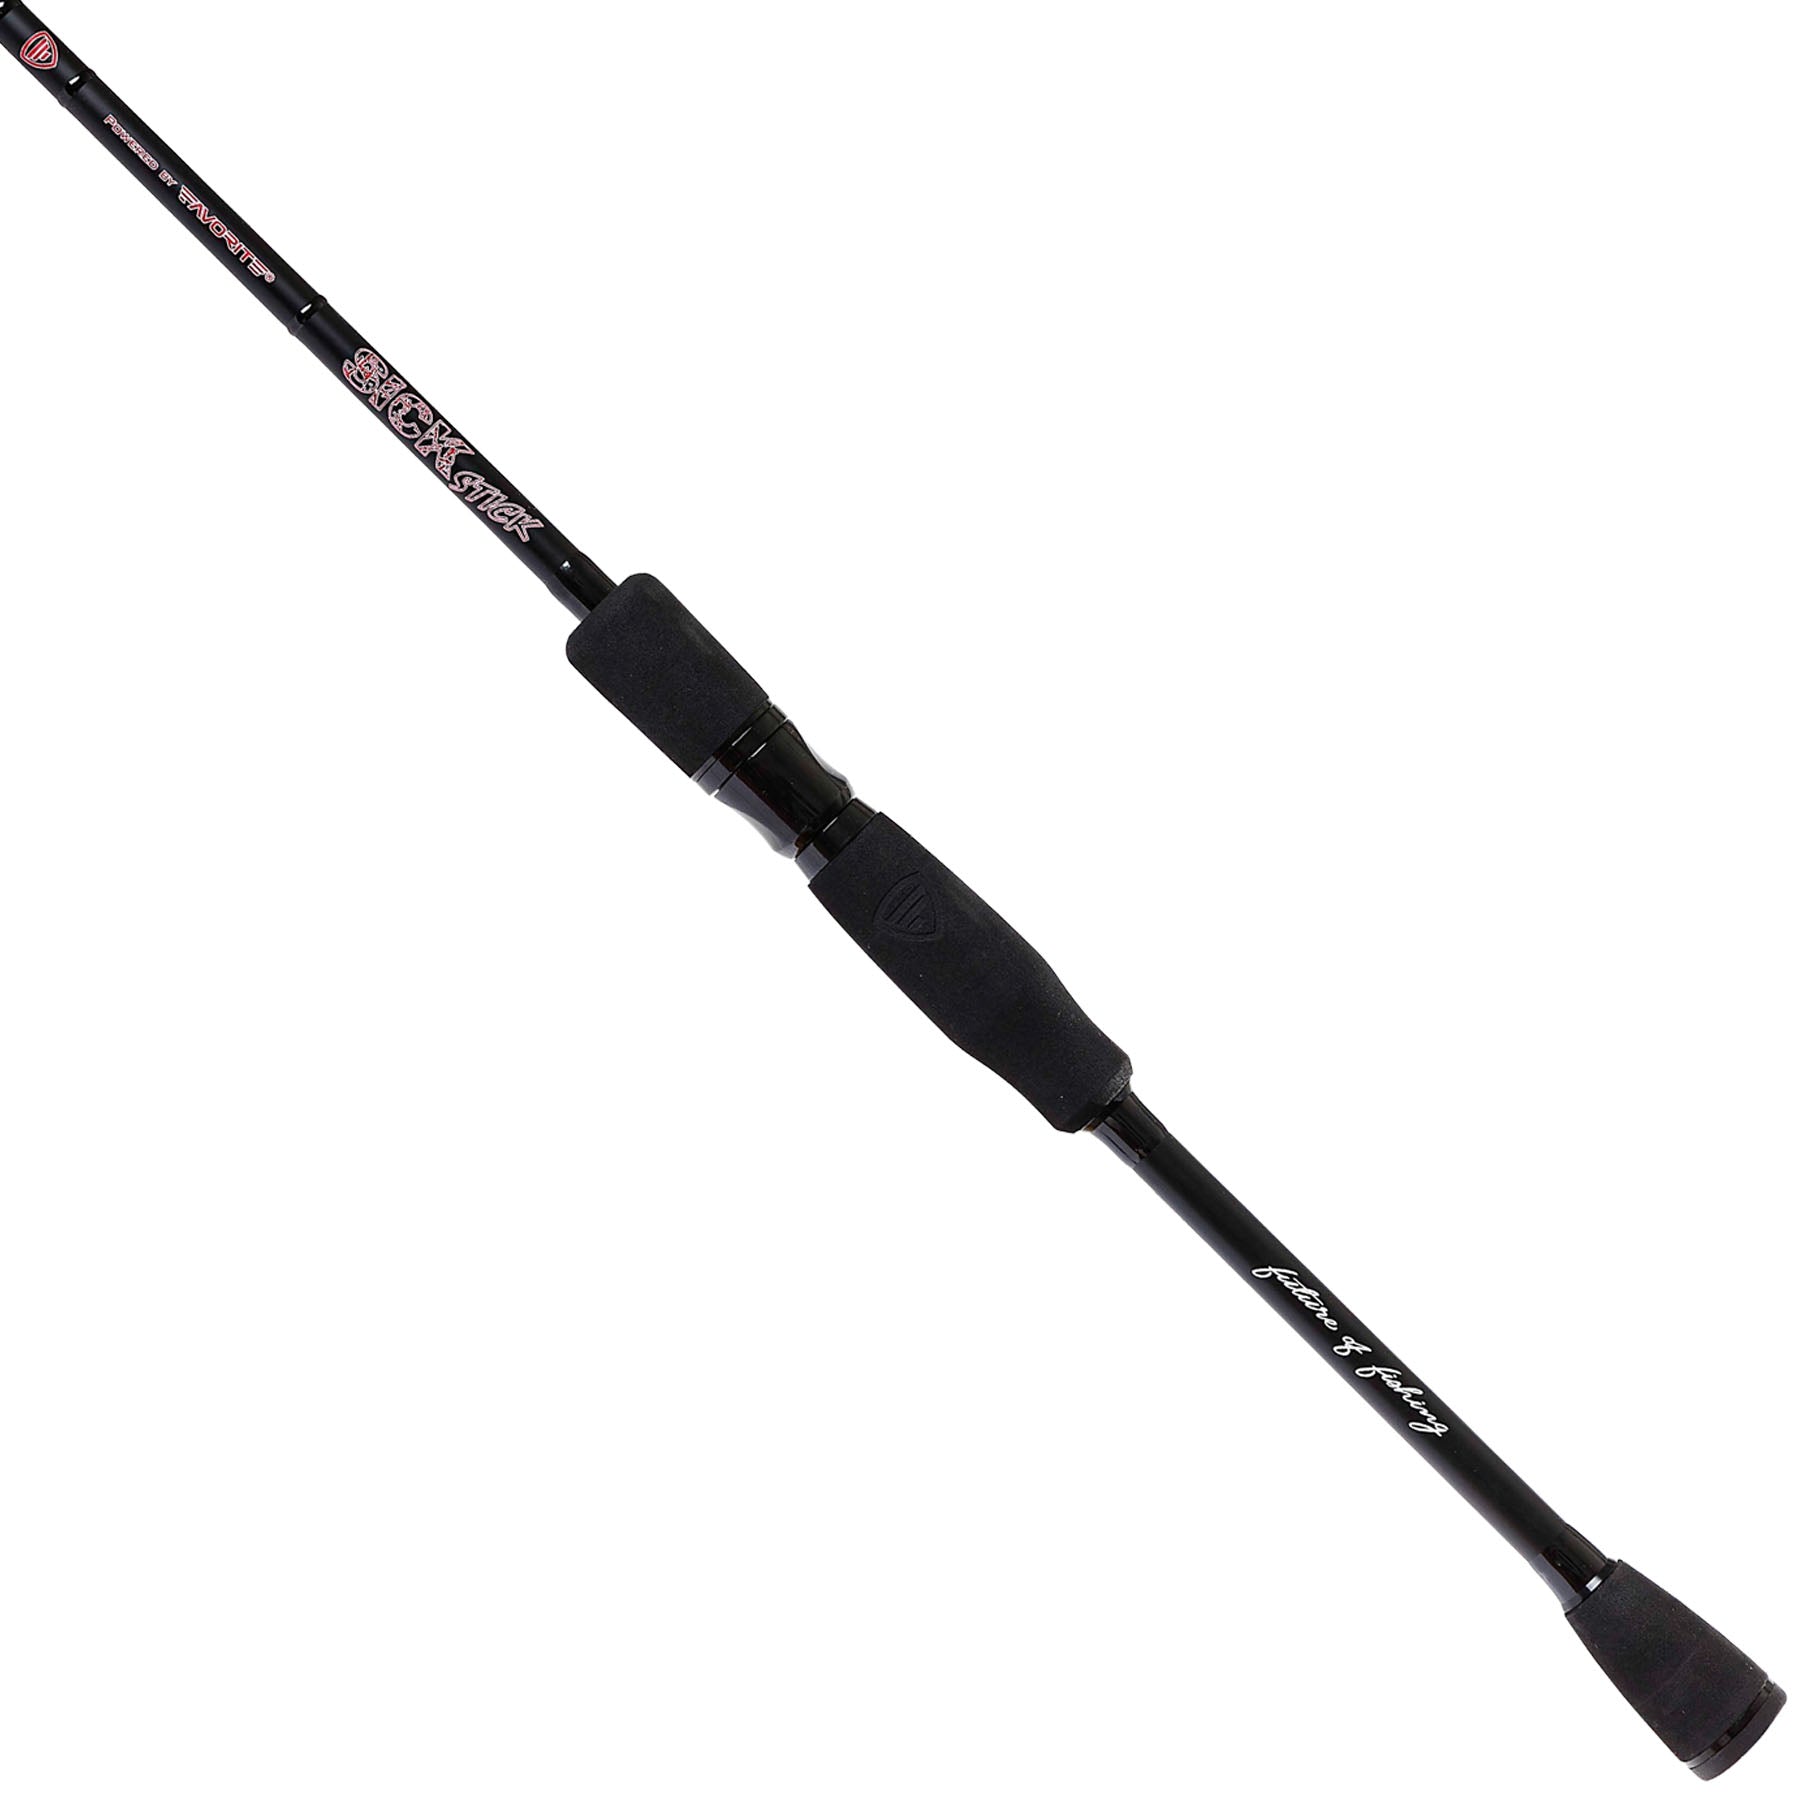 Sick Stick Spinning Rod | Favorite Fishing